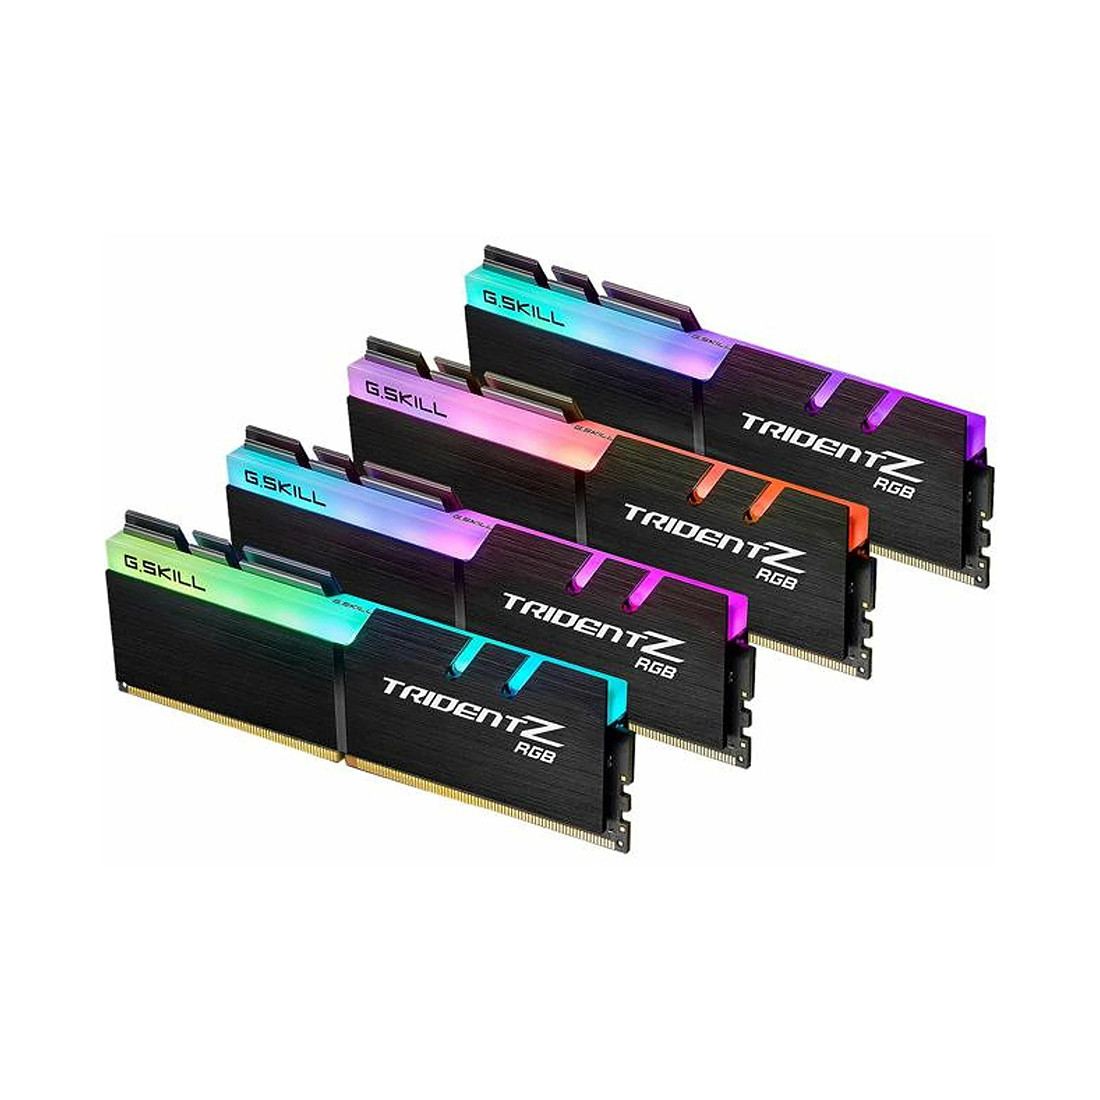 Комплект модулей памяти  G.SKILL  TridentZ RGB F4-3200C16Q-128GTZR (Kit 4x32GB)  DDR4  128GB  DIMM   Черный